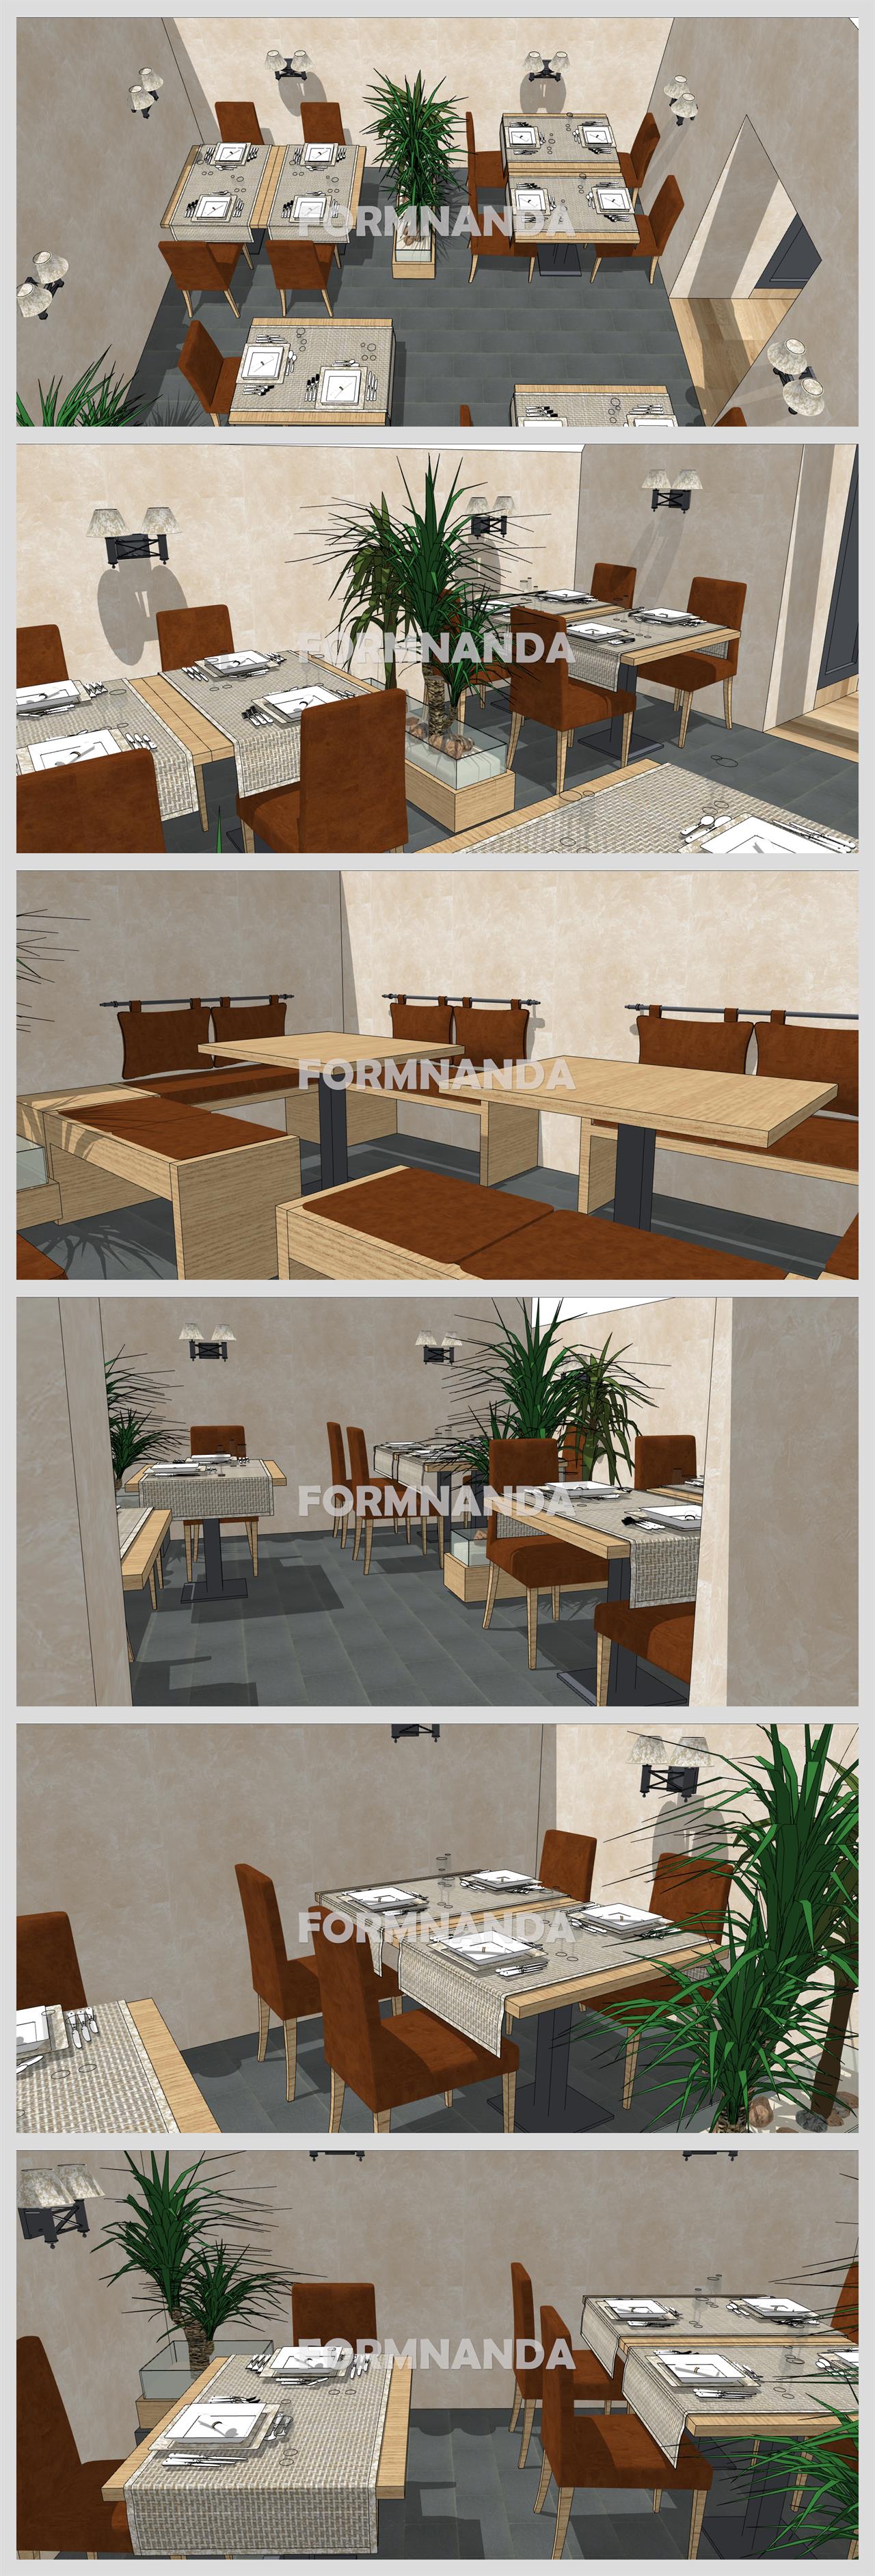 맞춤형 식당 디자인 웹툰배경 모델 사이트 상세보기